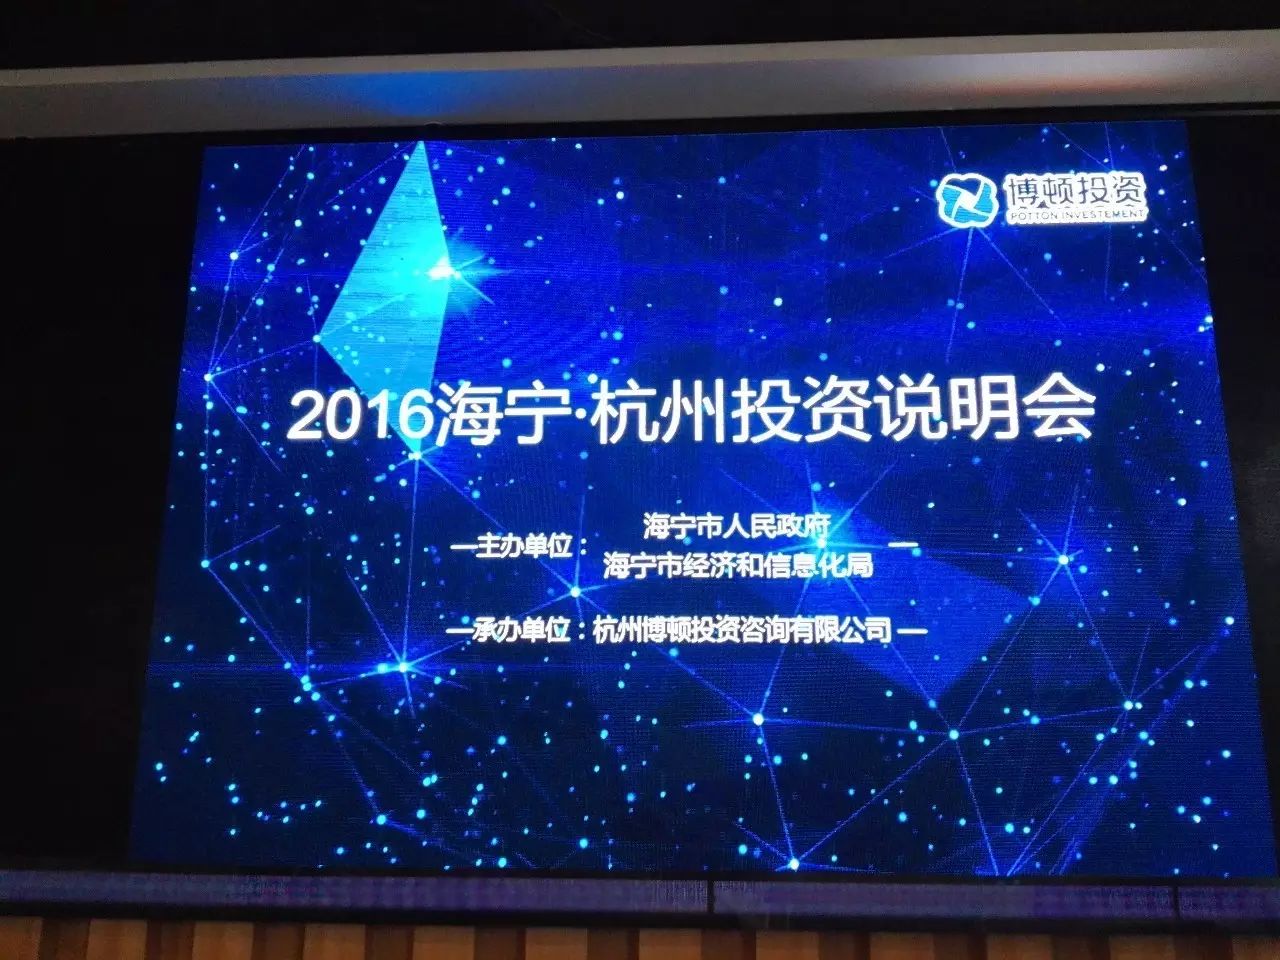 热烈祝贺博顿承办的2016海宁·杭州投资说明会圆满成功！